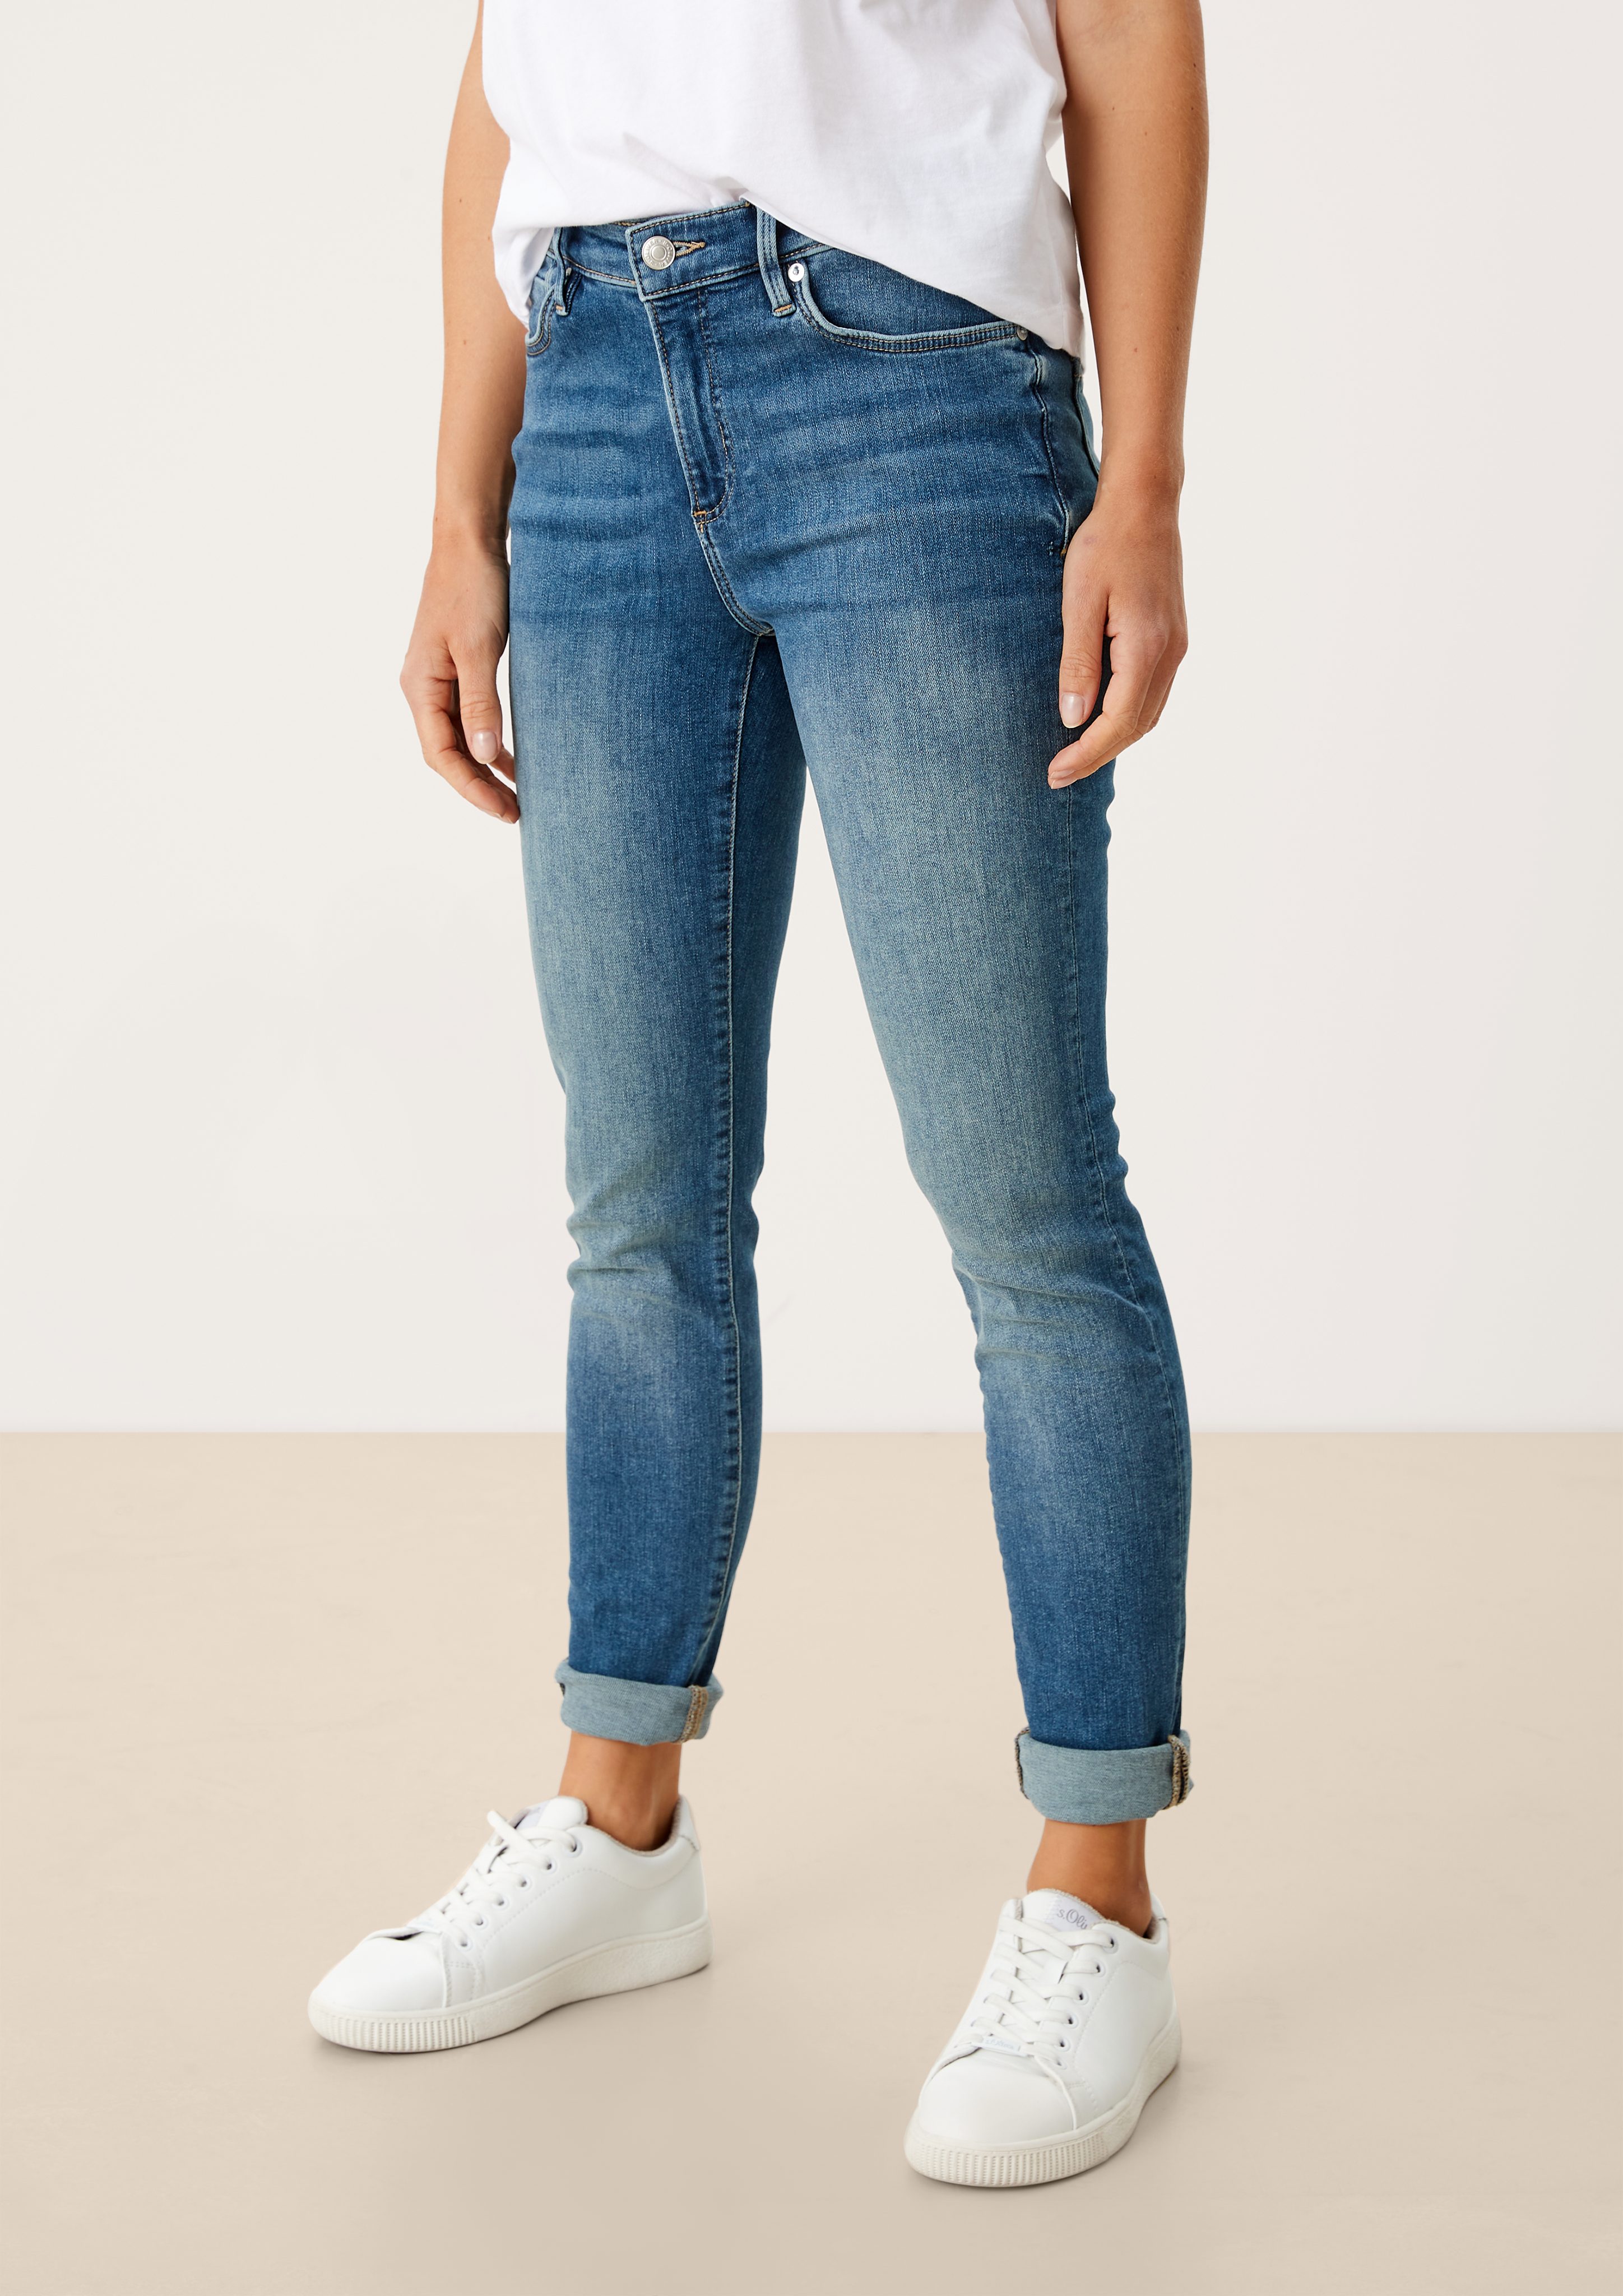 s.Oliver 5-Pocket-Jeans Jeans Izabell / Skinny Fit / Mid Rise / Skinny Leg Leder-Patch, Waschung medium blue